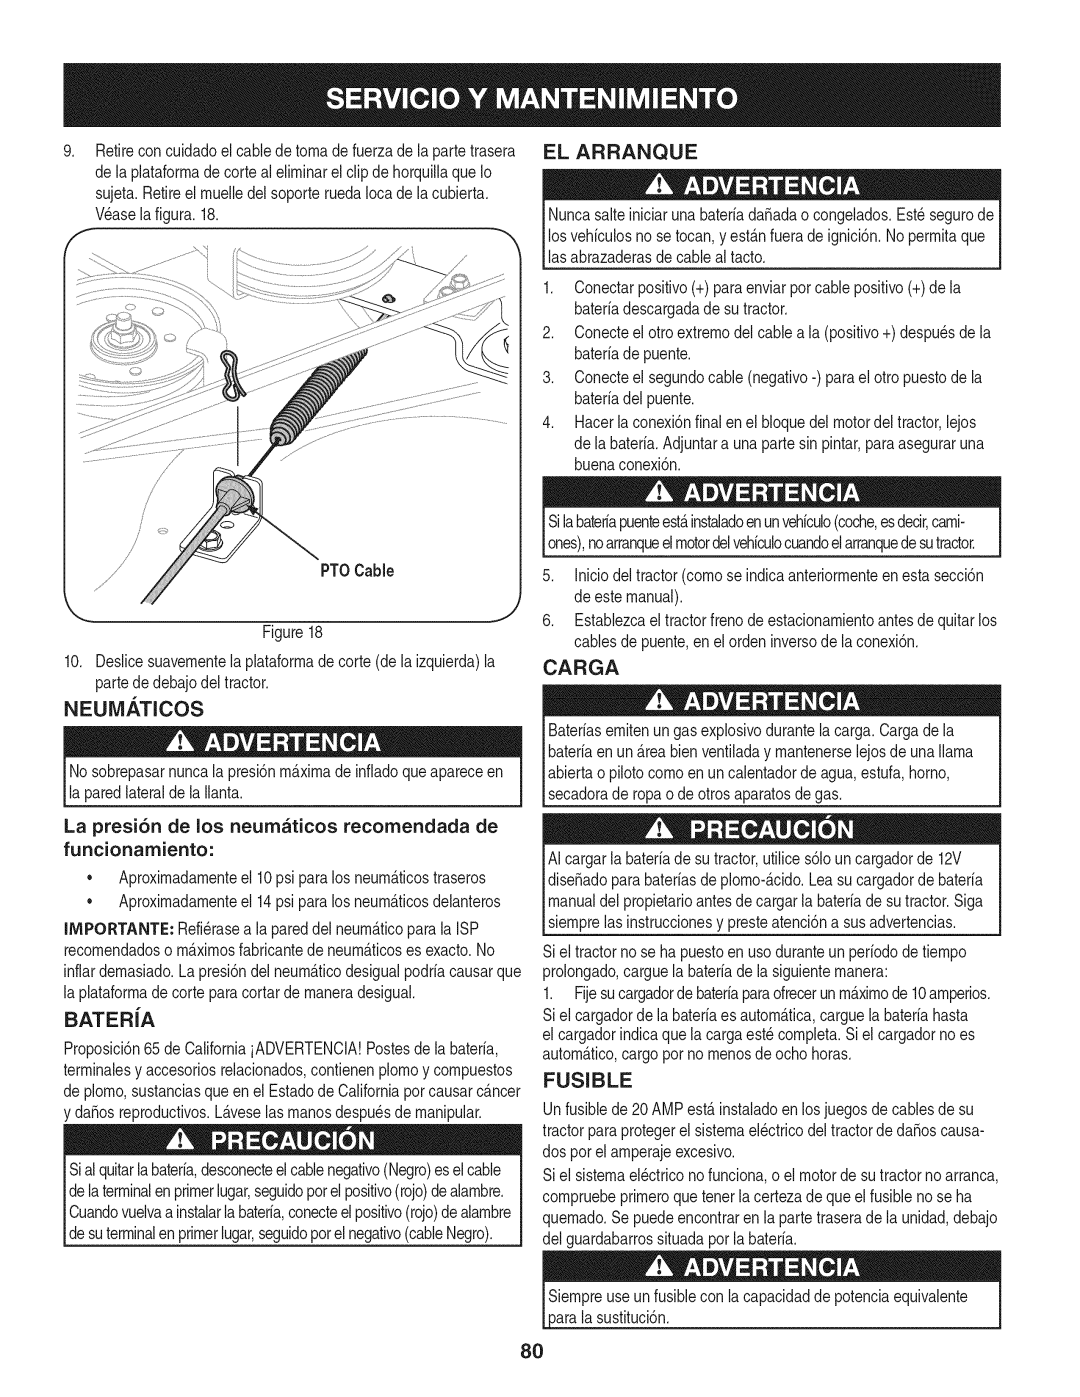 Craftsman 247.28901 manual El Arranque, Carga, Neum._Ticos, Batera, Fusible 